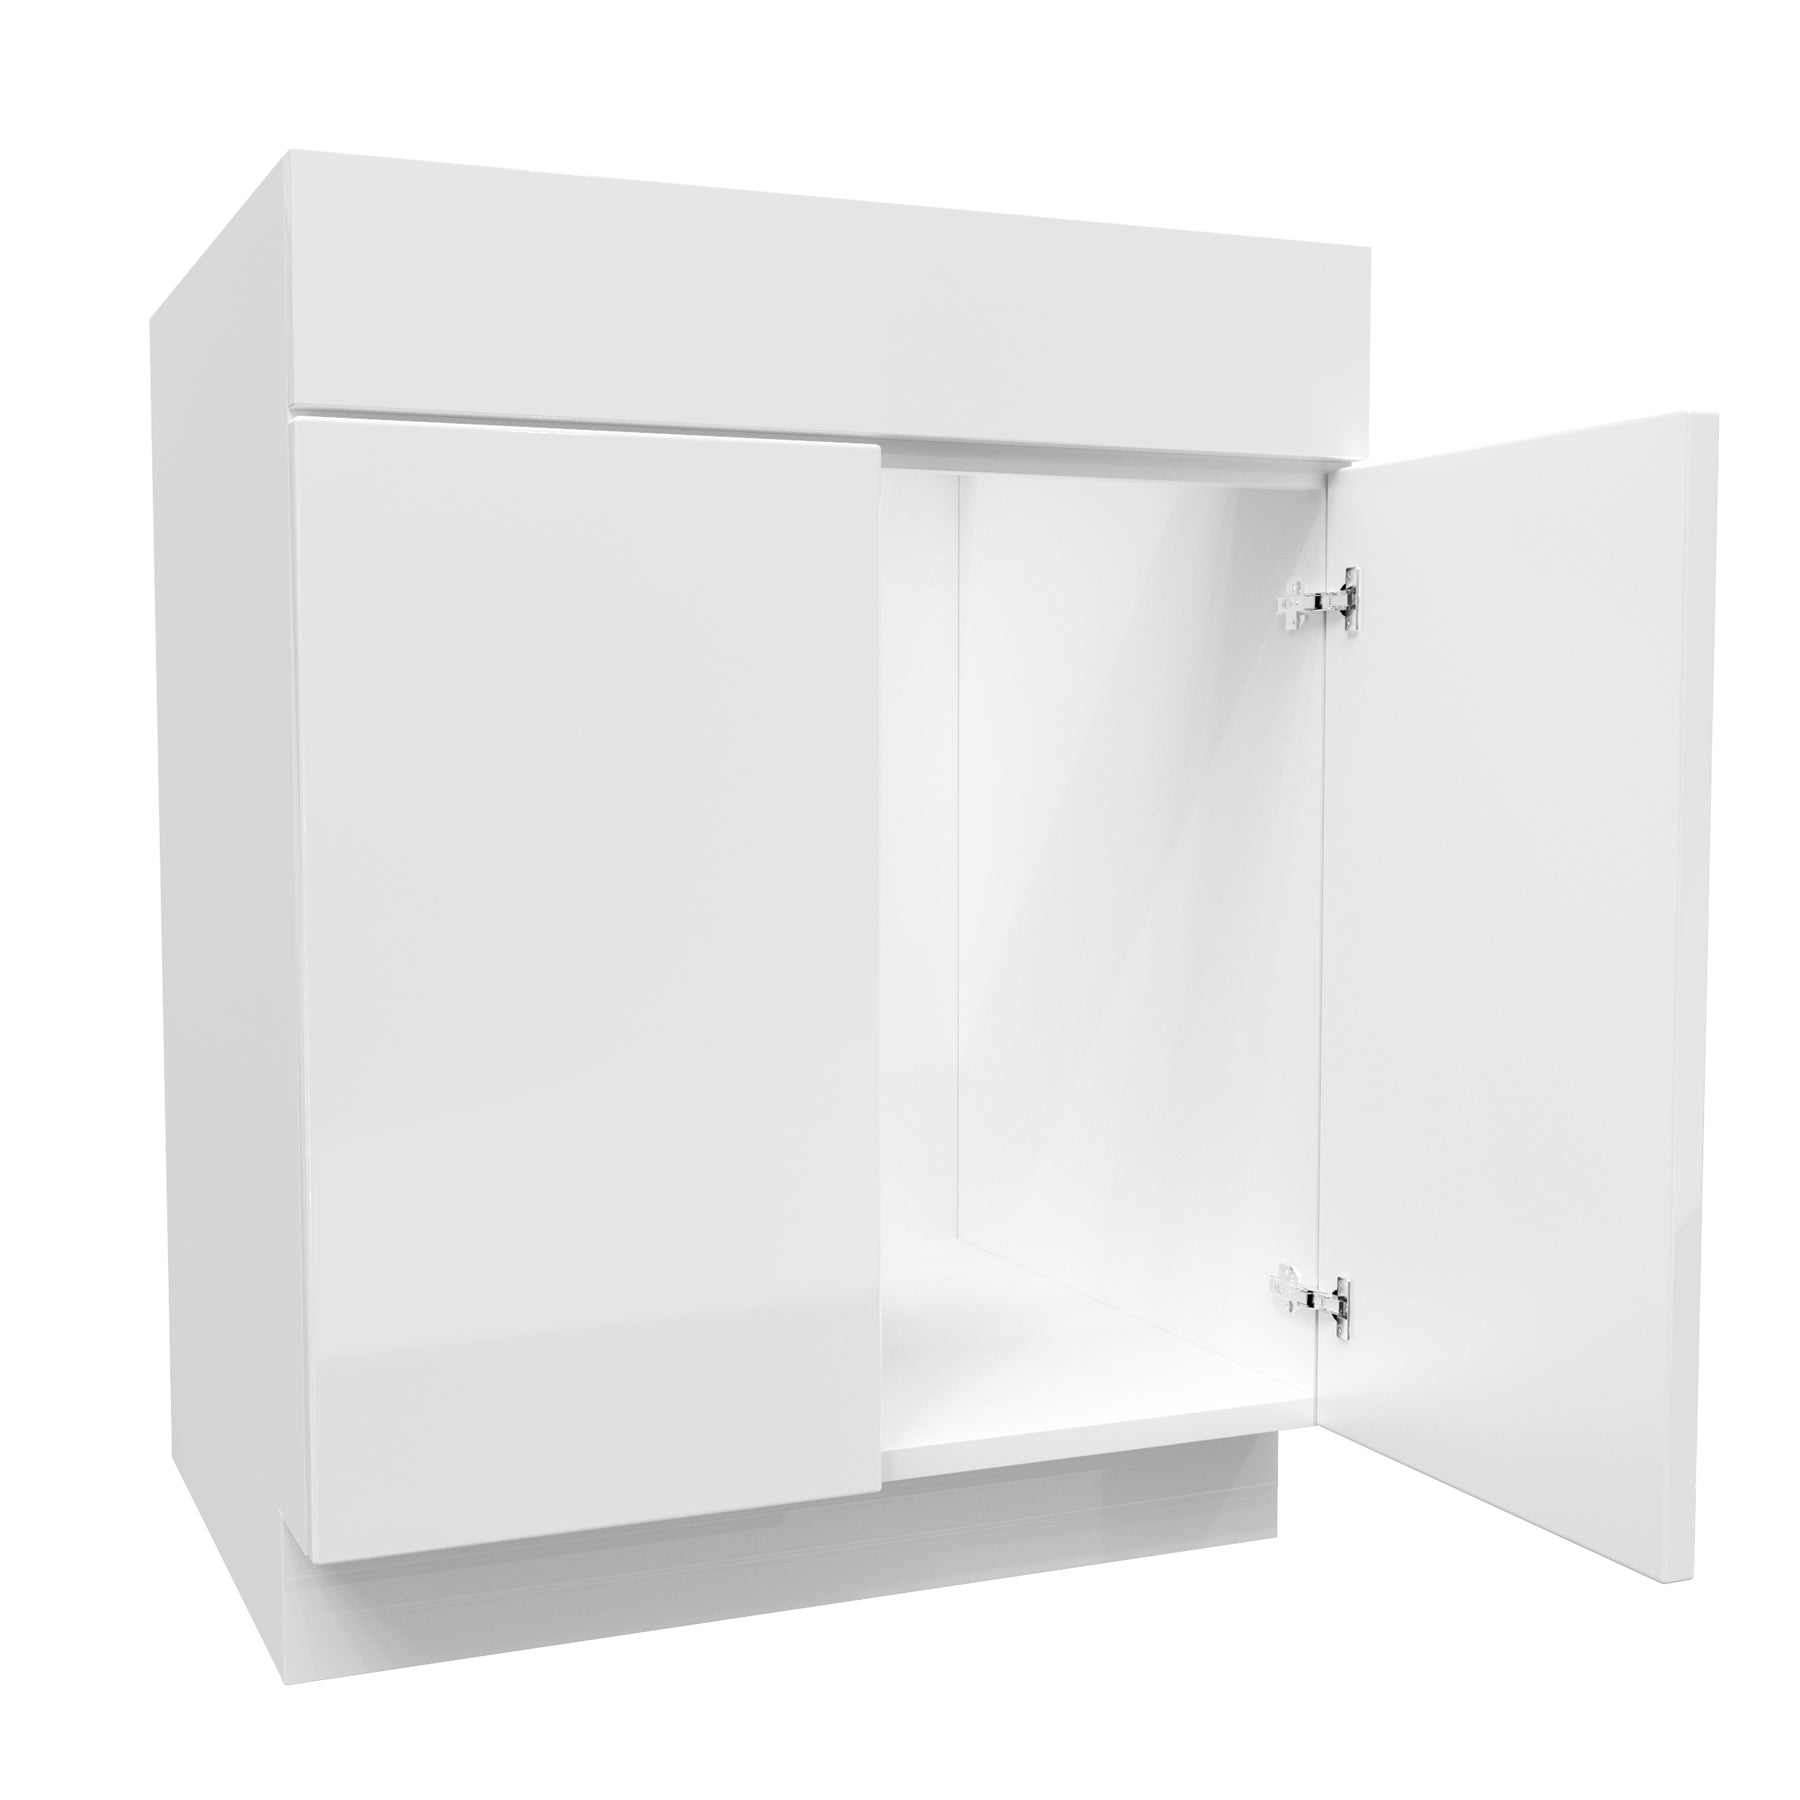 Sink Base Cabinet | Milano White | 27W x 34.5H x 24D